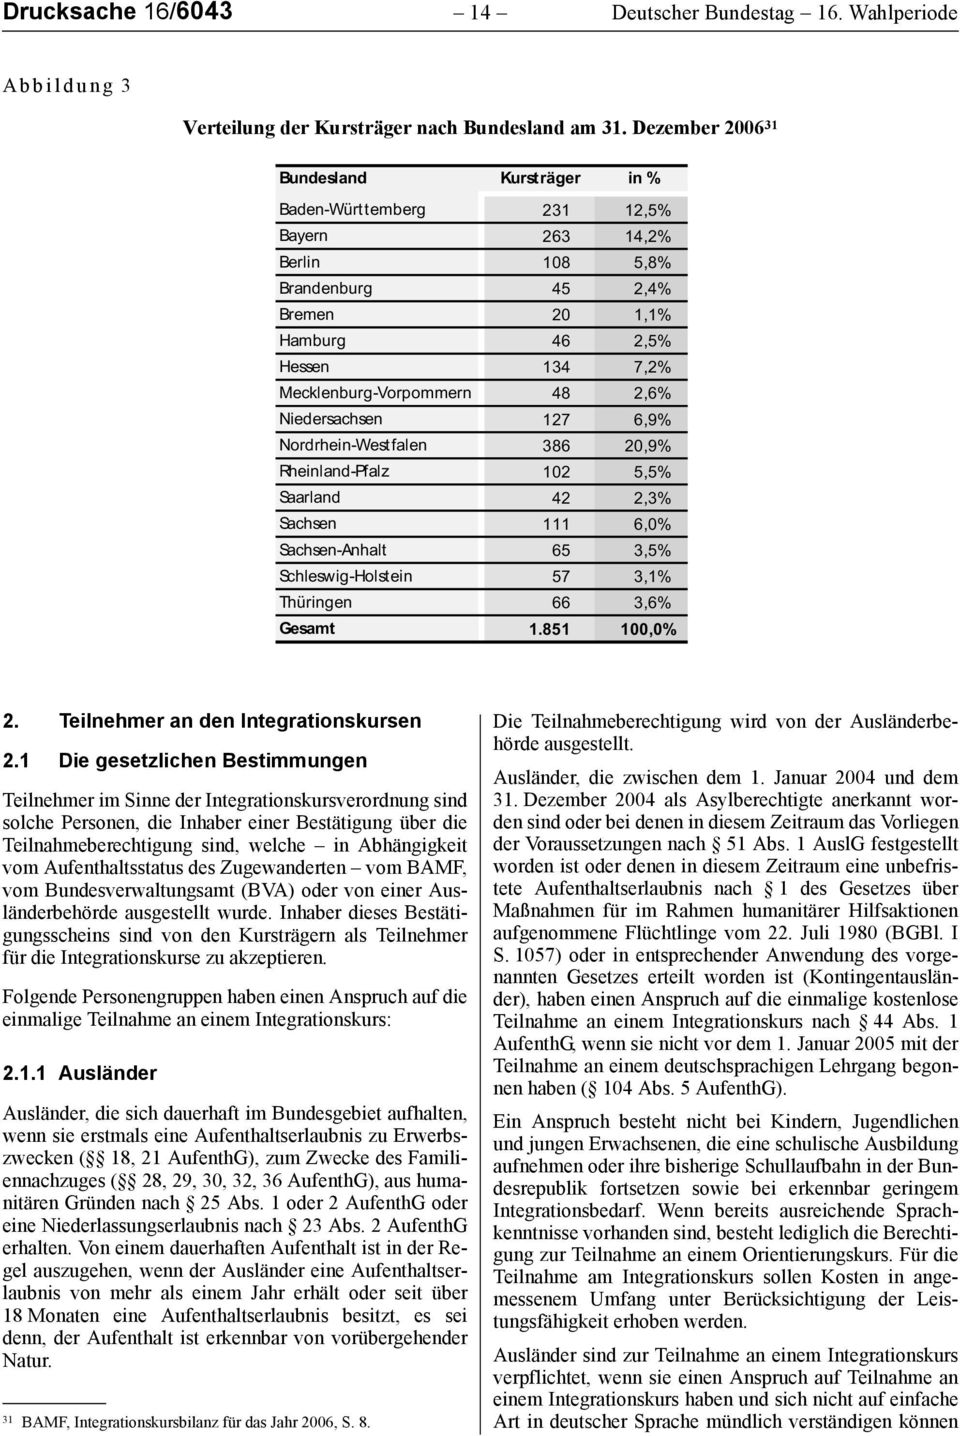 2,6% Niedersachsen 127 6,9% Nordrhein-Westfalen 386 20,9% Rheinland-Pfalz 102 5,5% Saarland 42 2,3% Sachsen 111 6,0% Sachsen-Anhalt 65 3,5% Schleswig-Holstein 57 3,1% Thüringen 66 3,6% Gesamt 1.